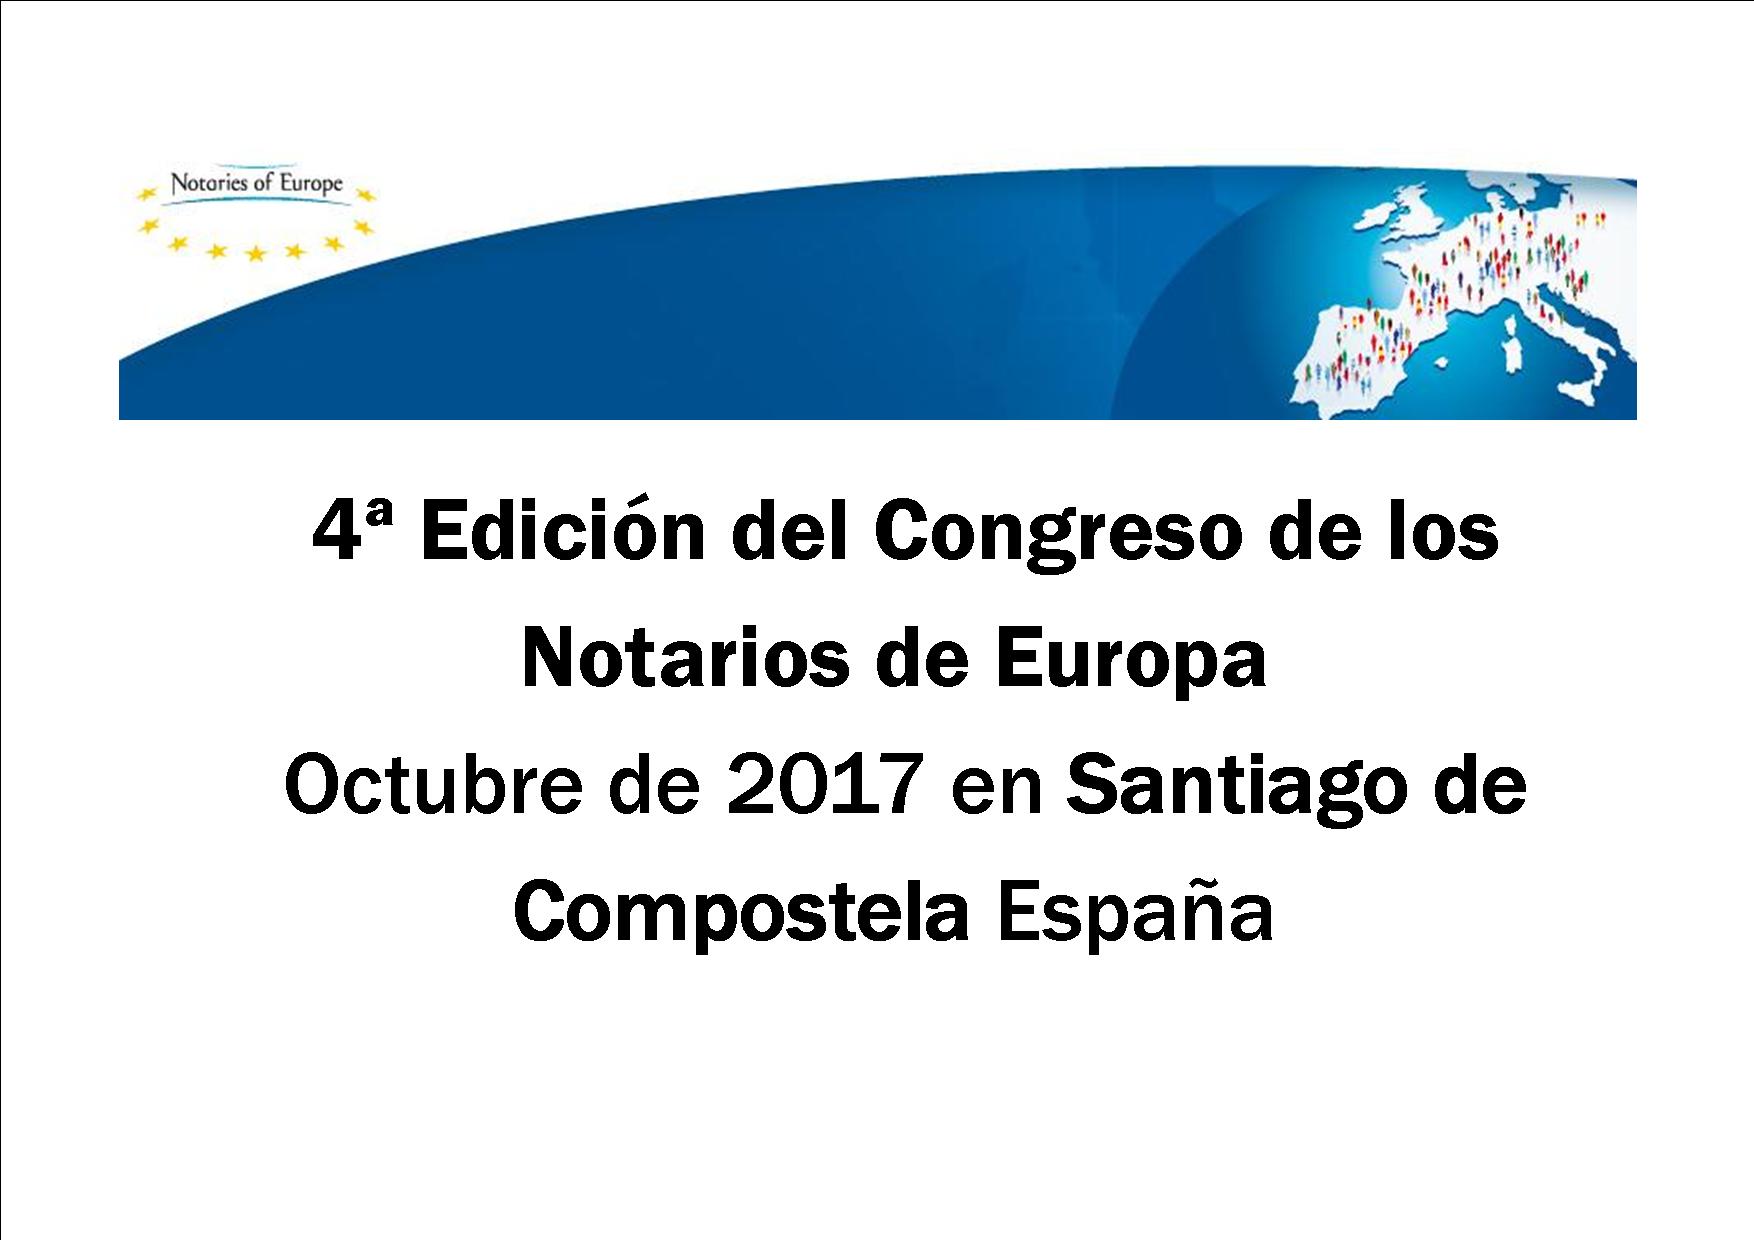 La 4 edicin del Congreso de los Notarios de Europa se realizar en Espaa.